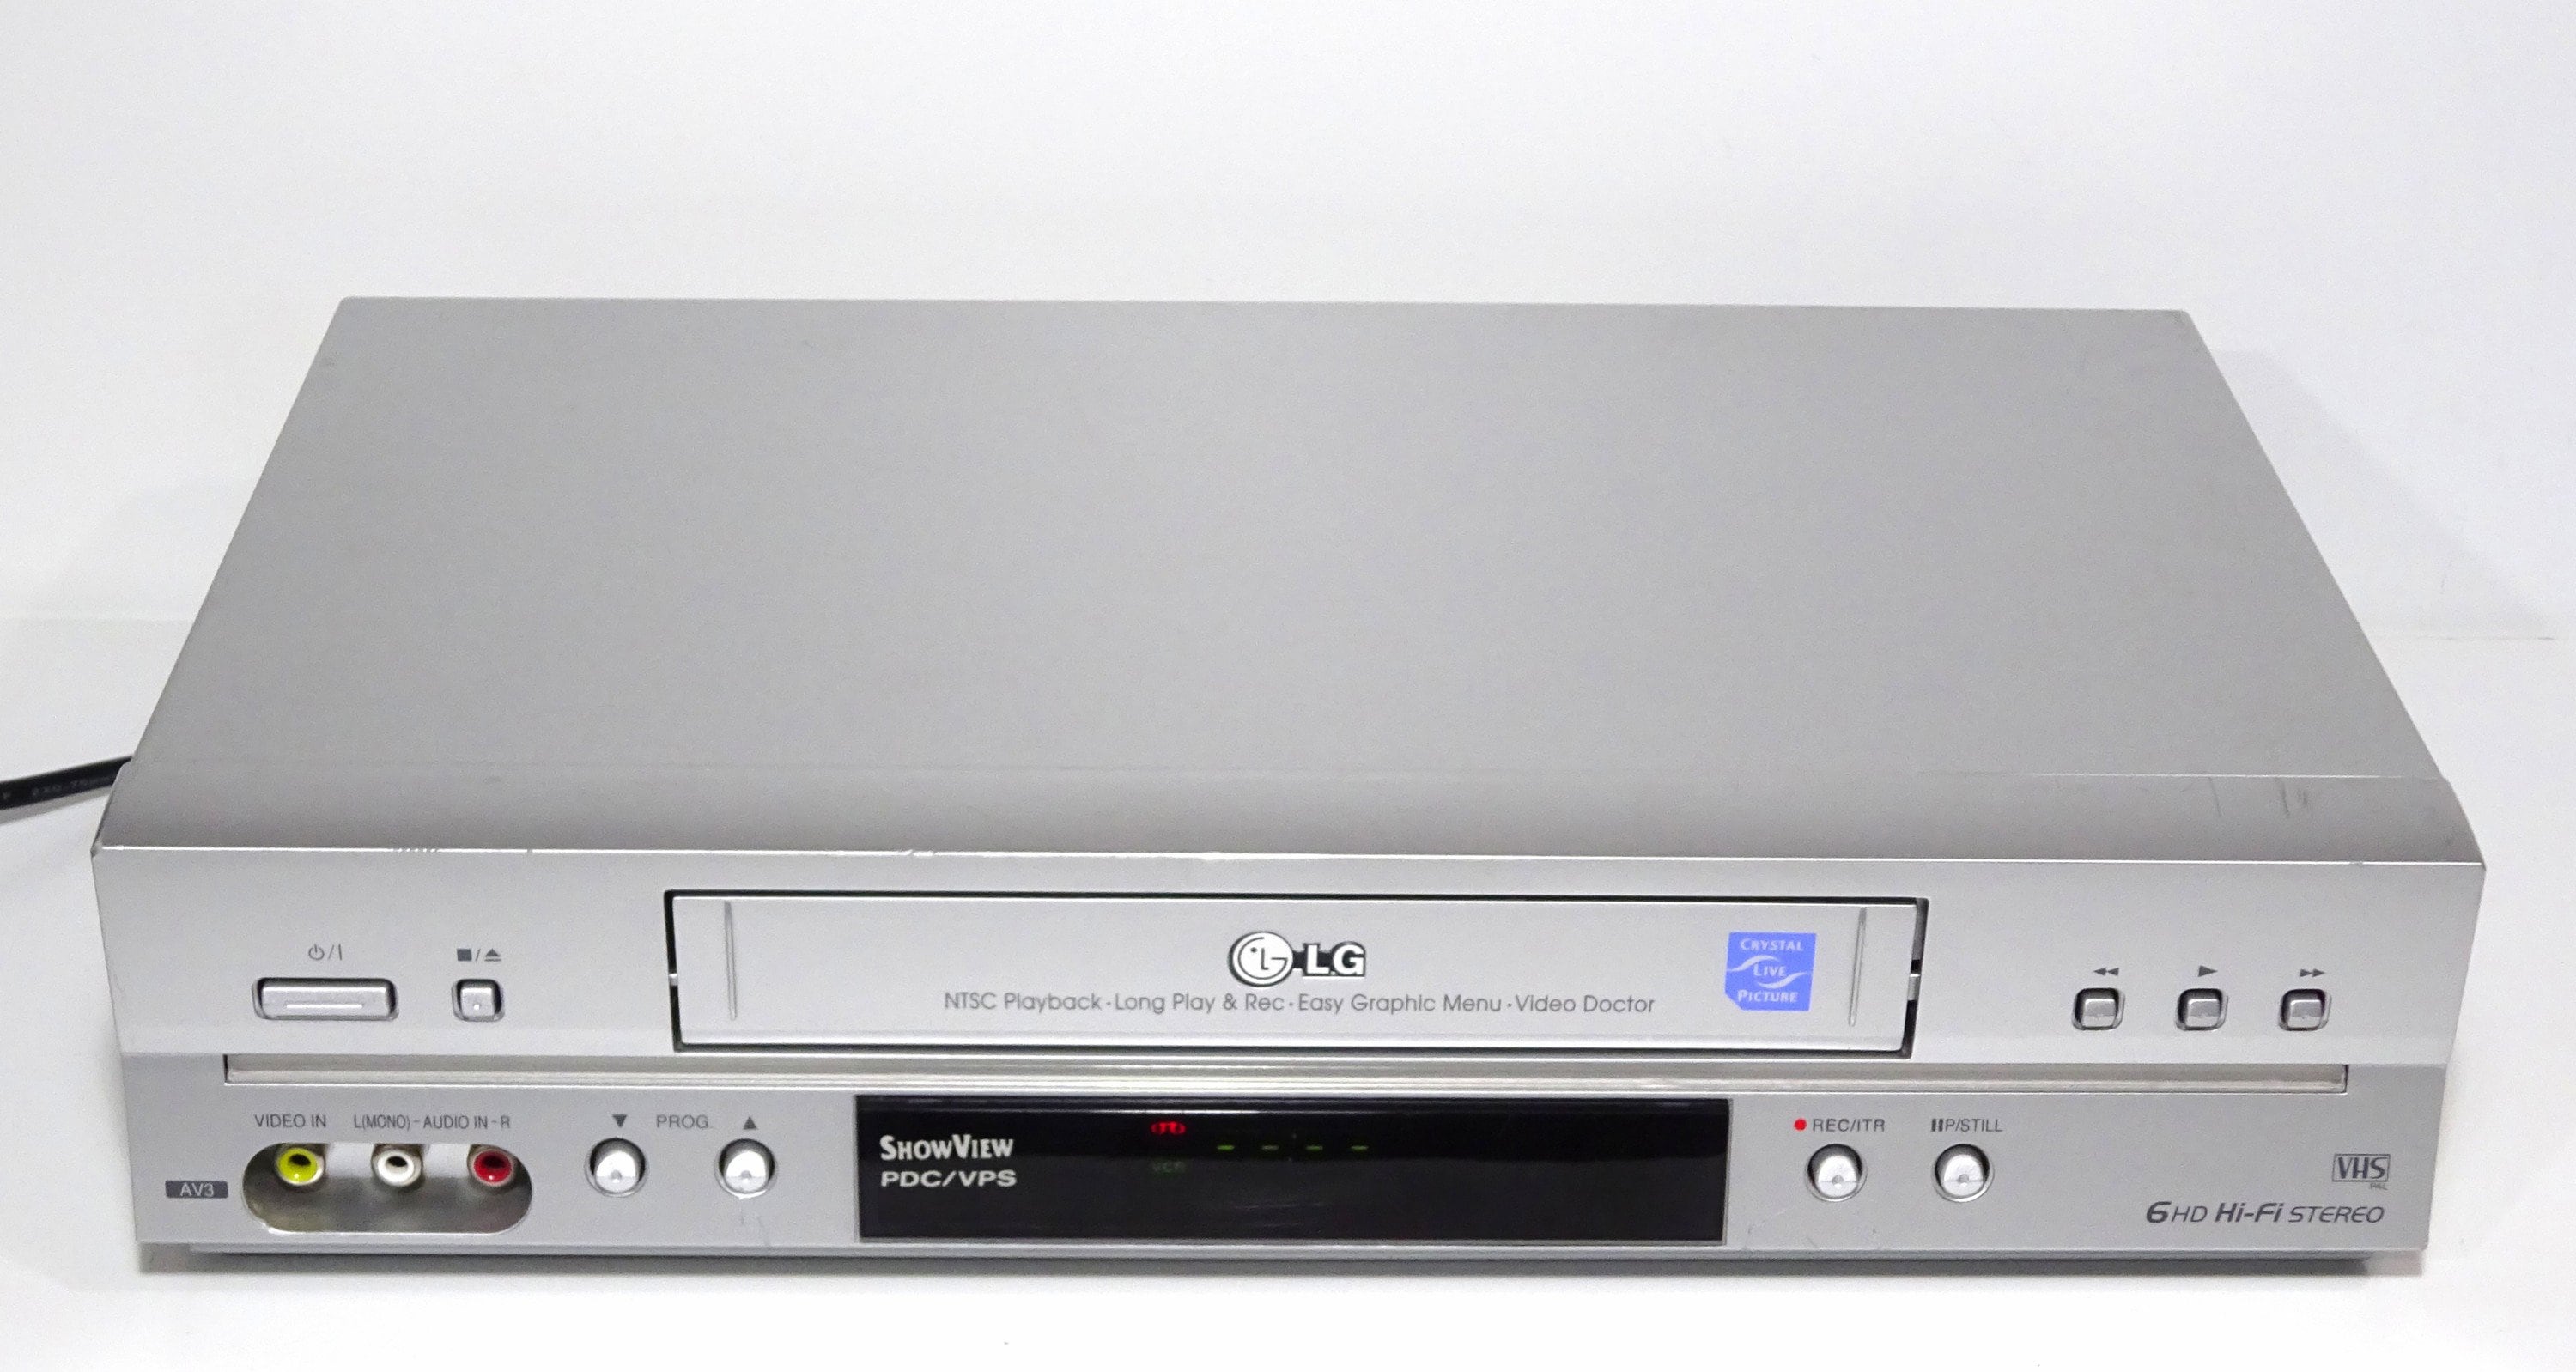 LG DVS7800 Videograbadora + grabadora de VHS + reproductor de DVD - VHS - 6  cabezas - Estéreo